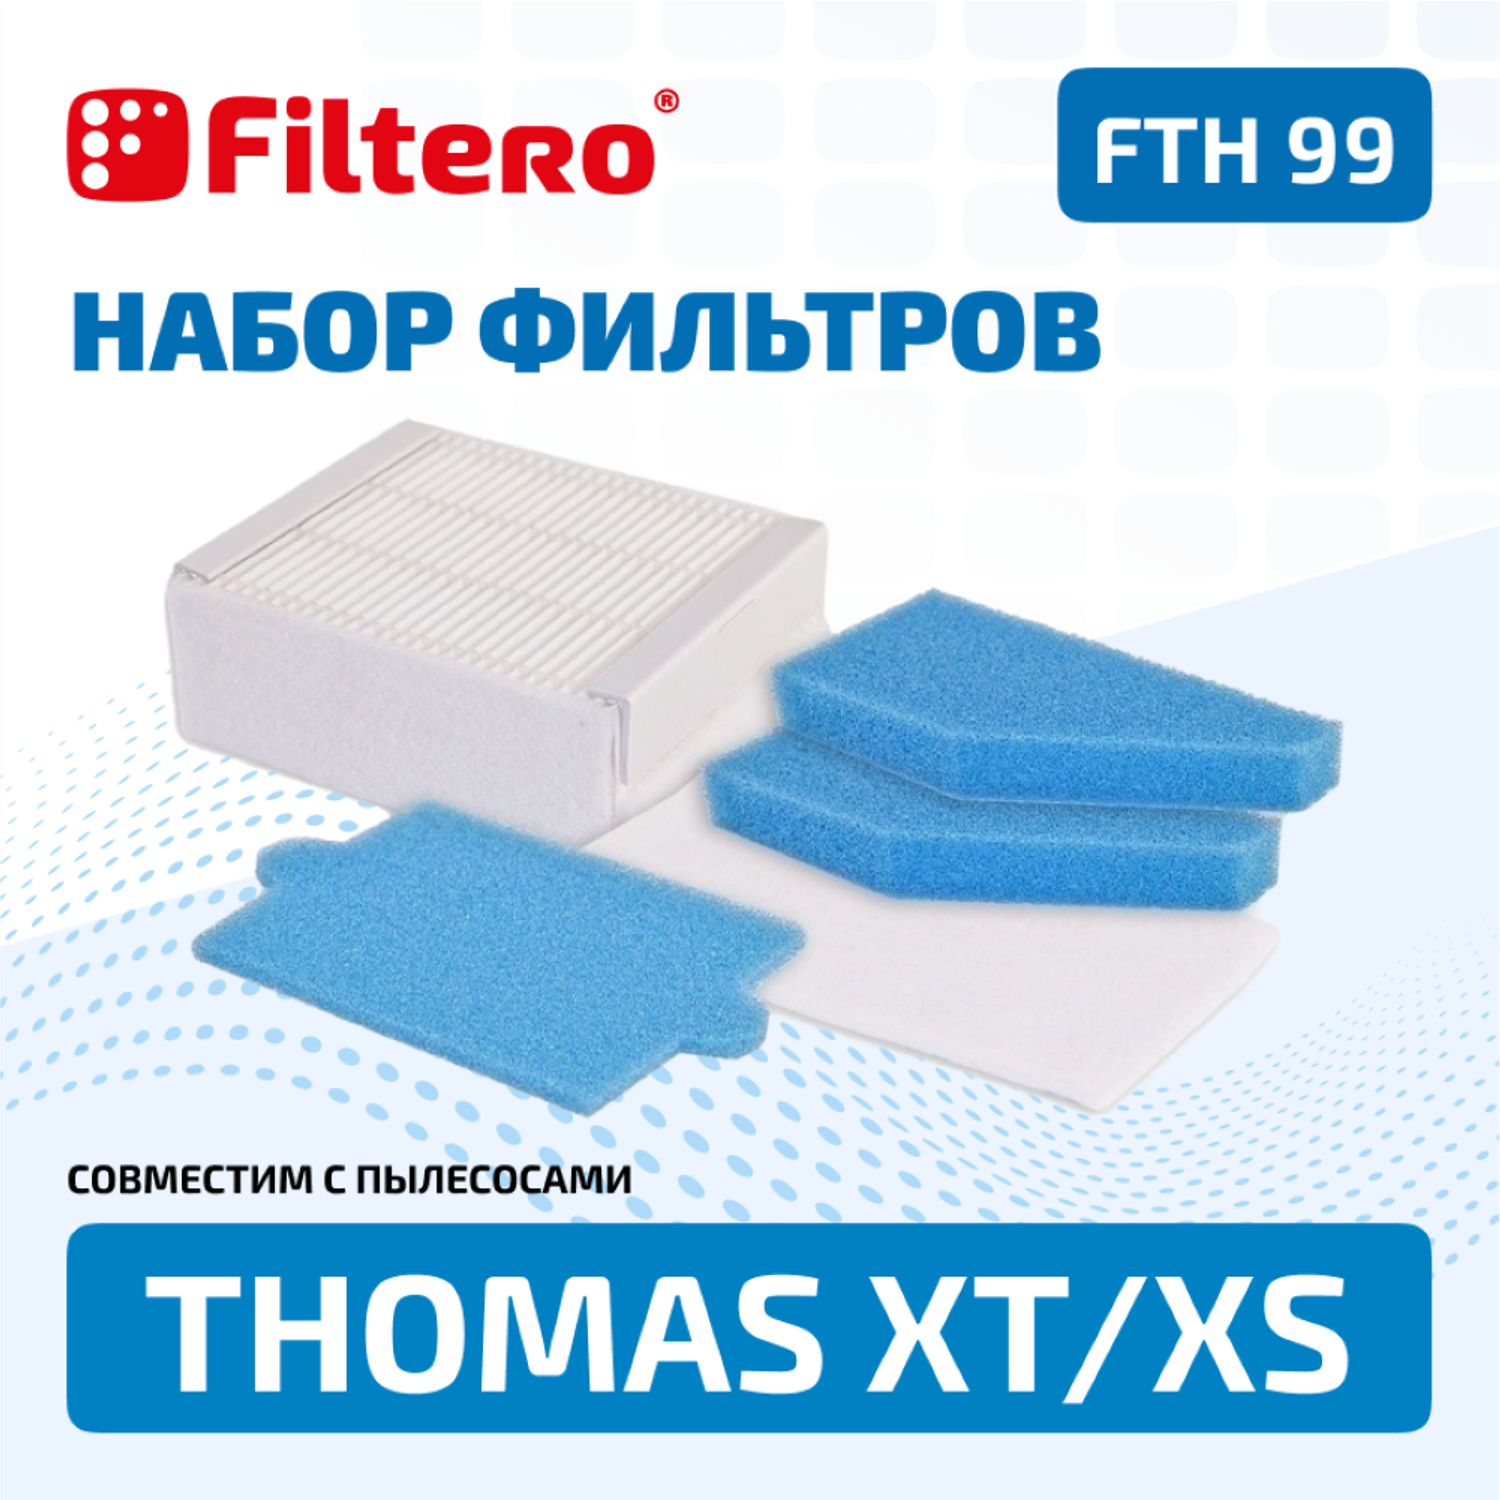 Набор фильтров HEPA Filtero FTH 99 TMS для пылесосов Thomas XT/XS - фото 1